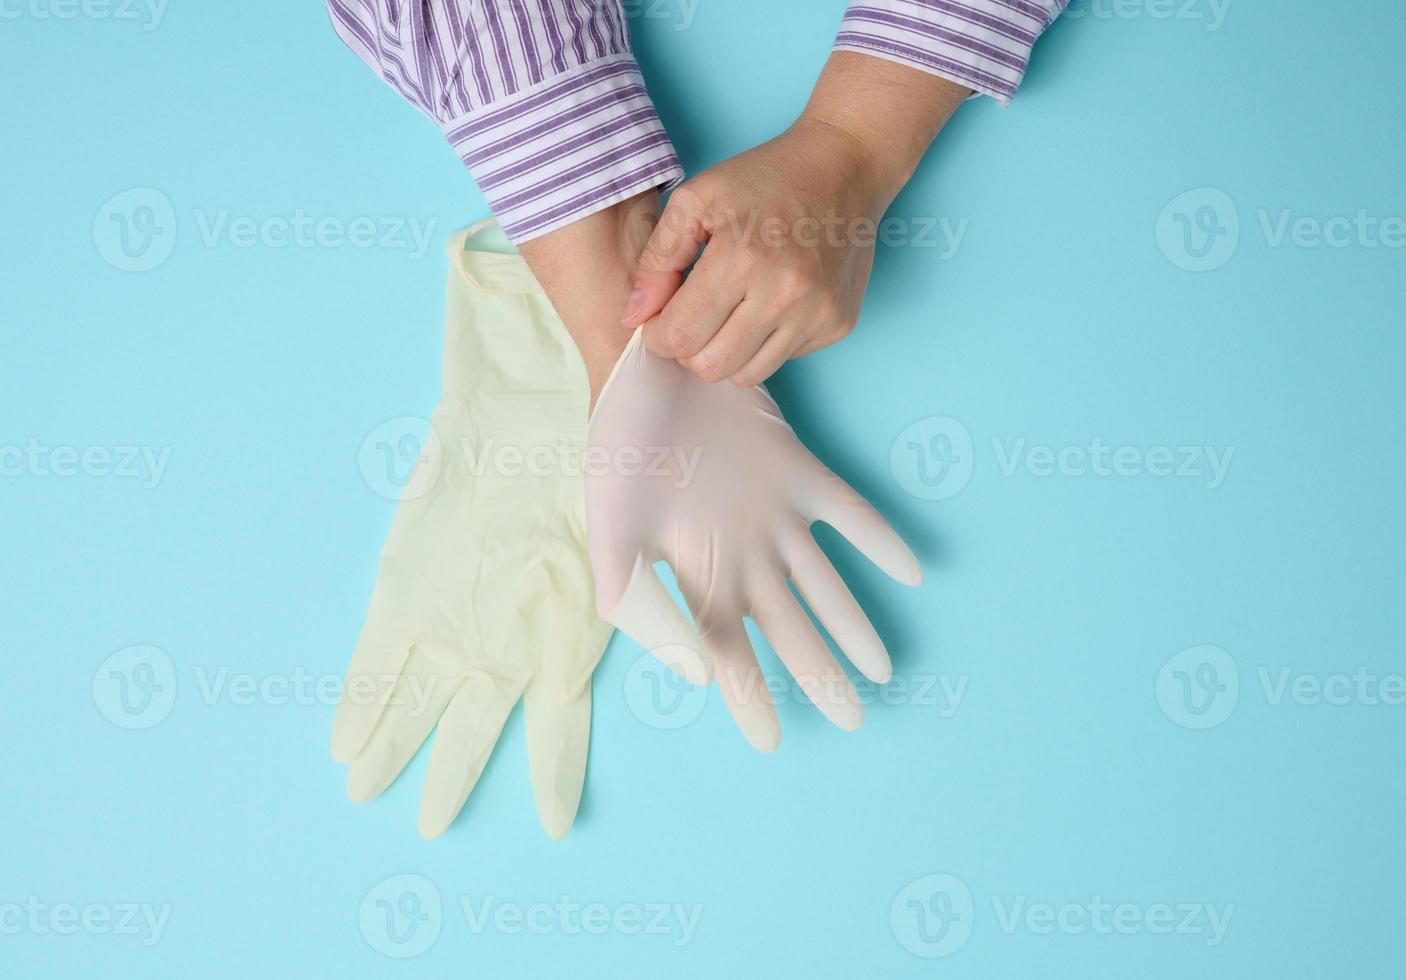 processo de colocar luvas de látex branco na mão sobre fundo azul, protetor de higiene foto